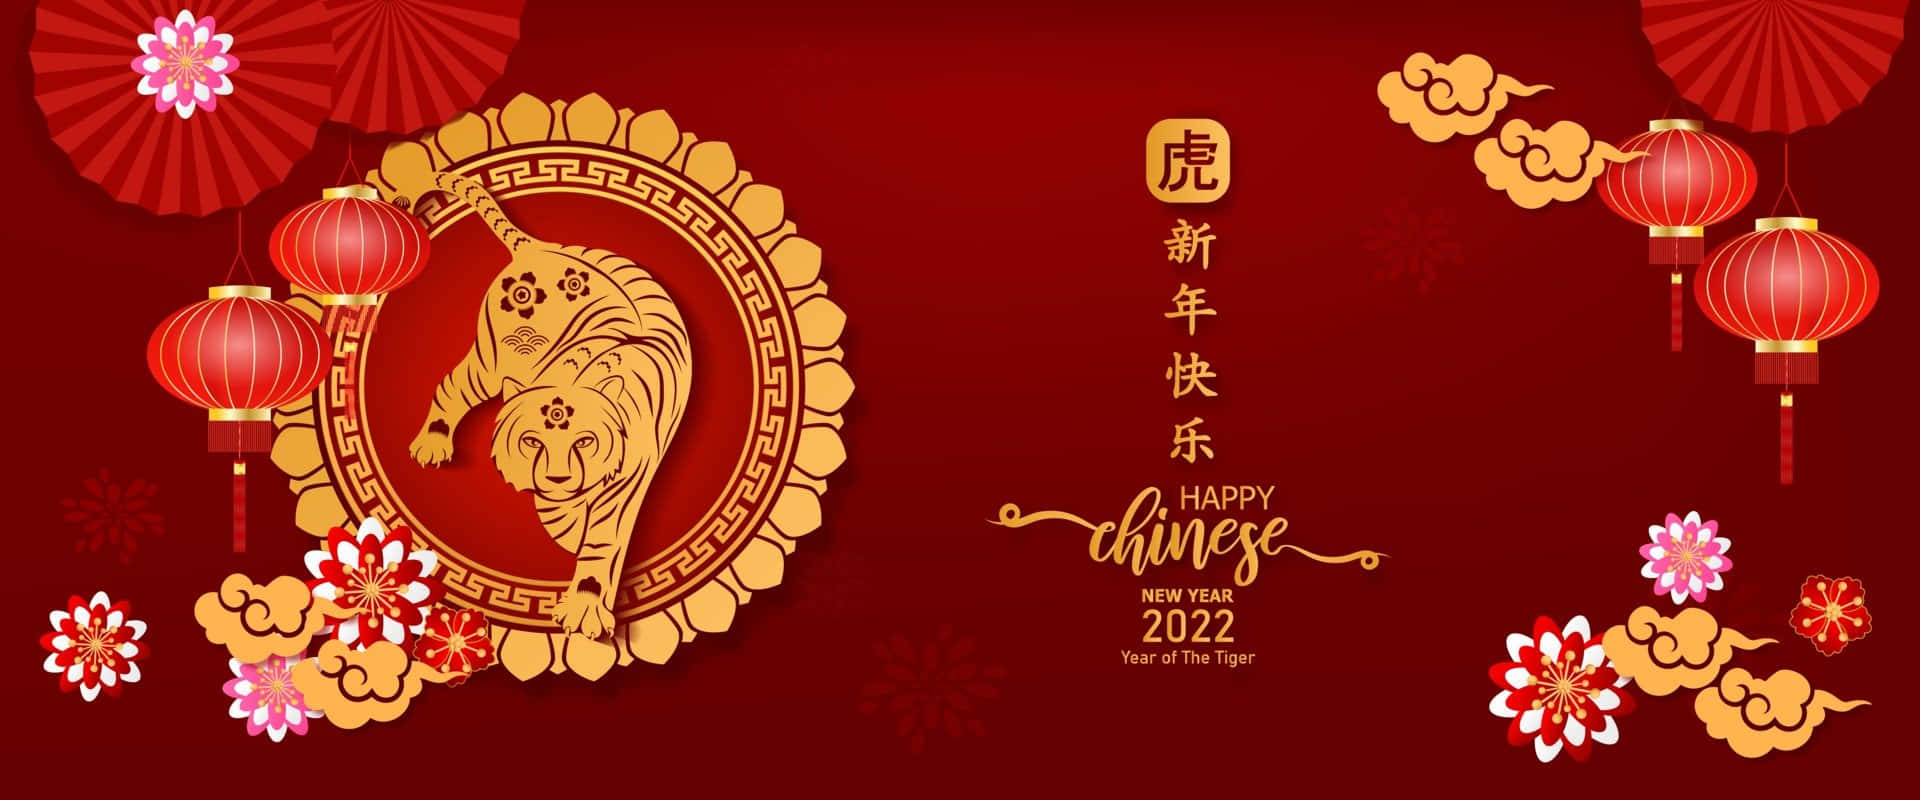 Fondods Del Año Nuevo Chino 2022